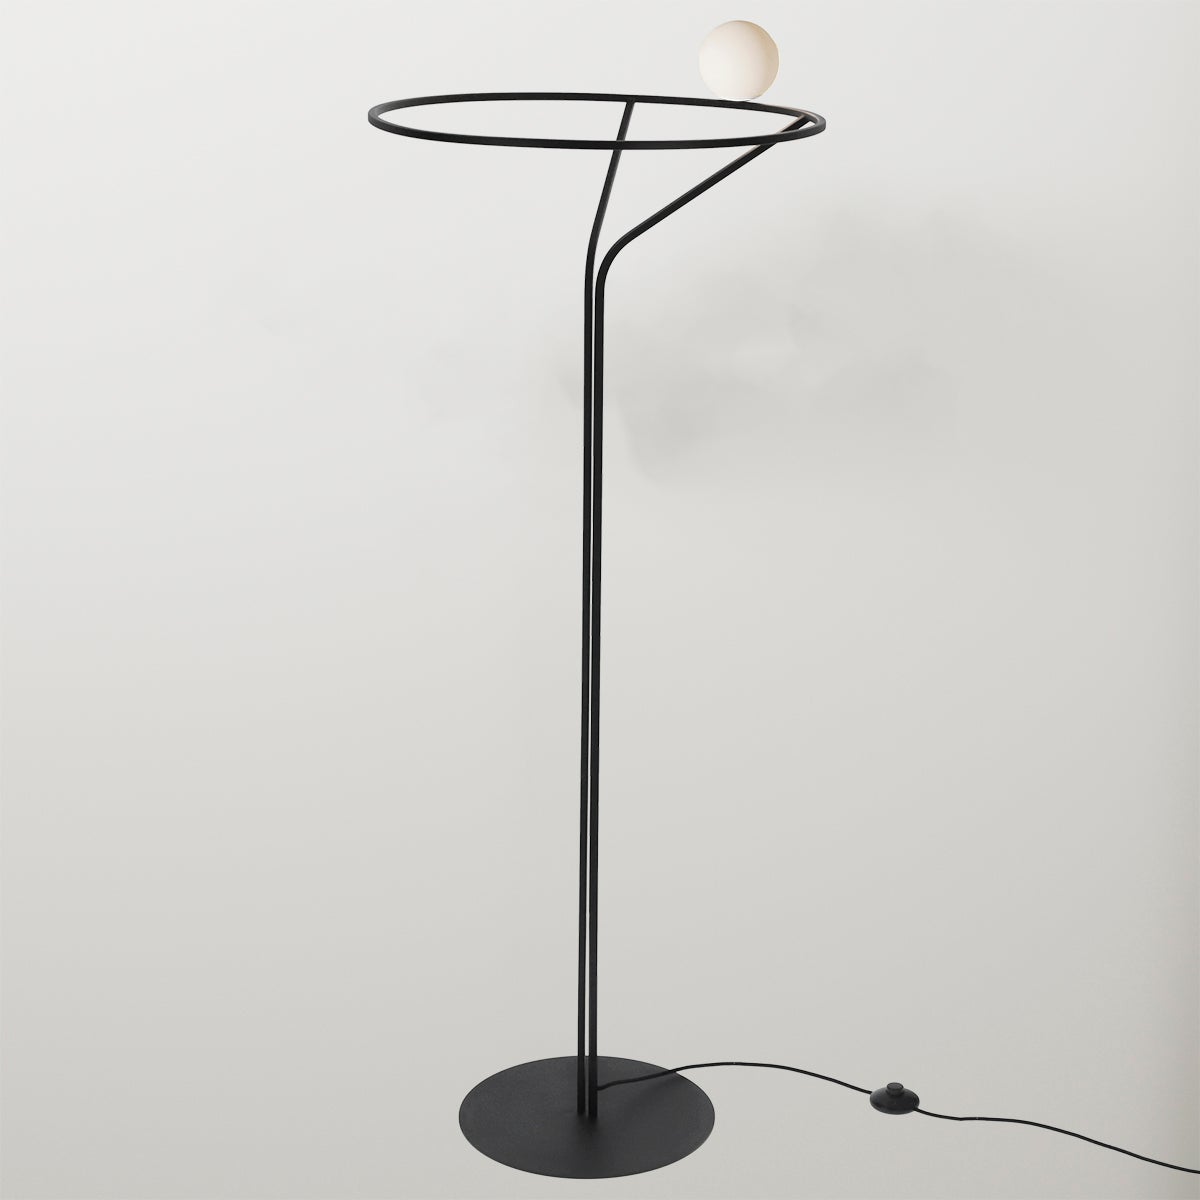 Lampadaire moderne, table de restaurant, minimalisme, artiste verre opaque blanc